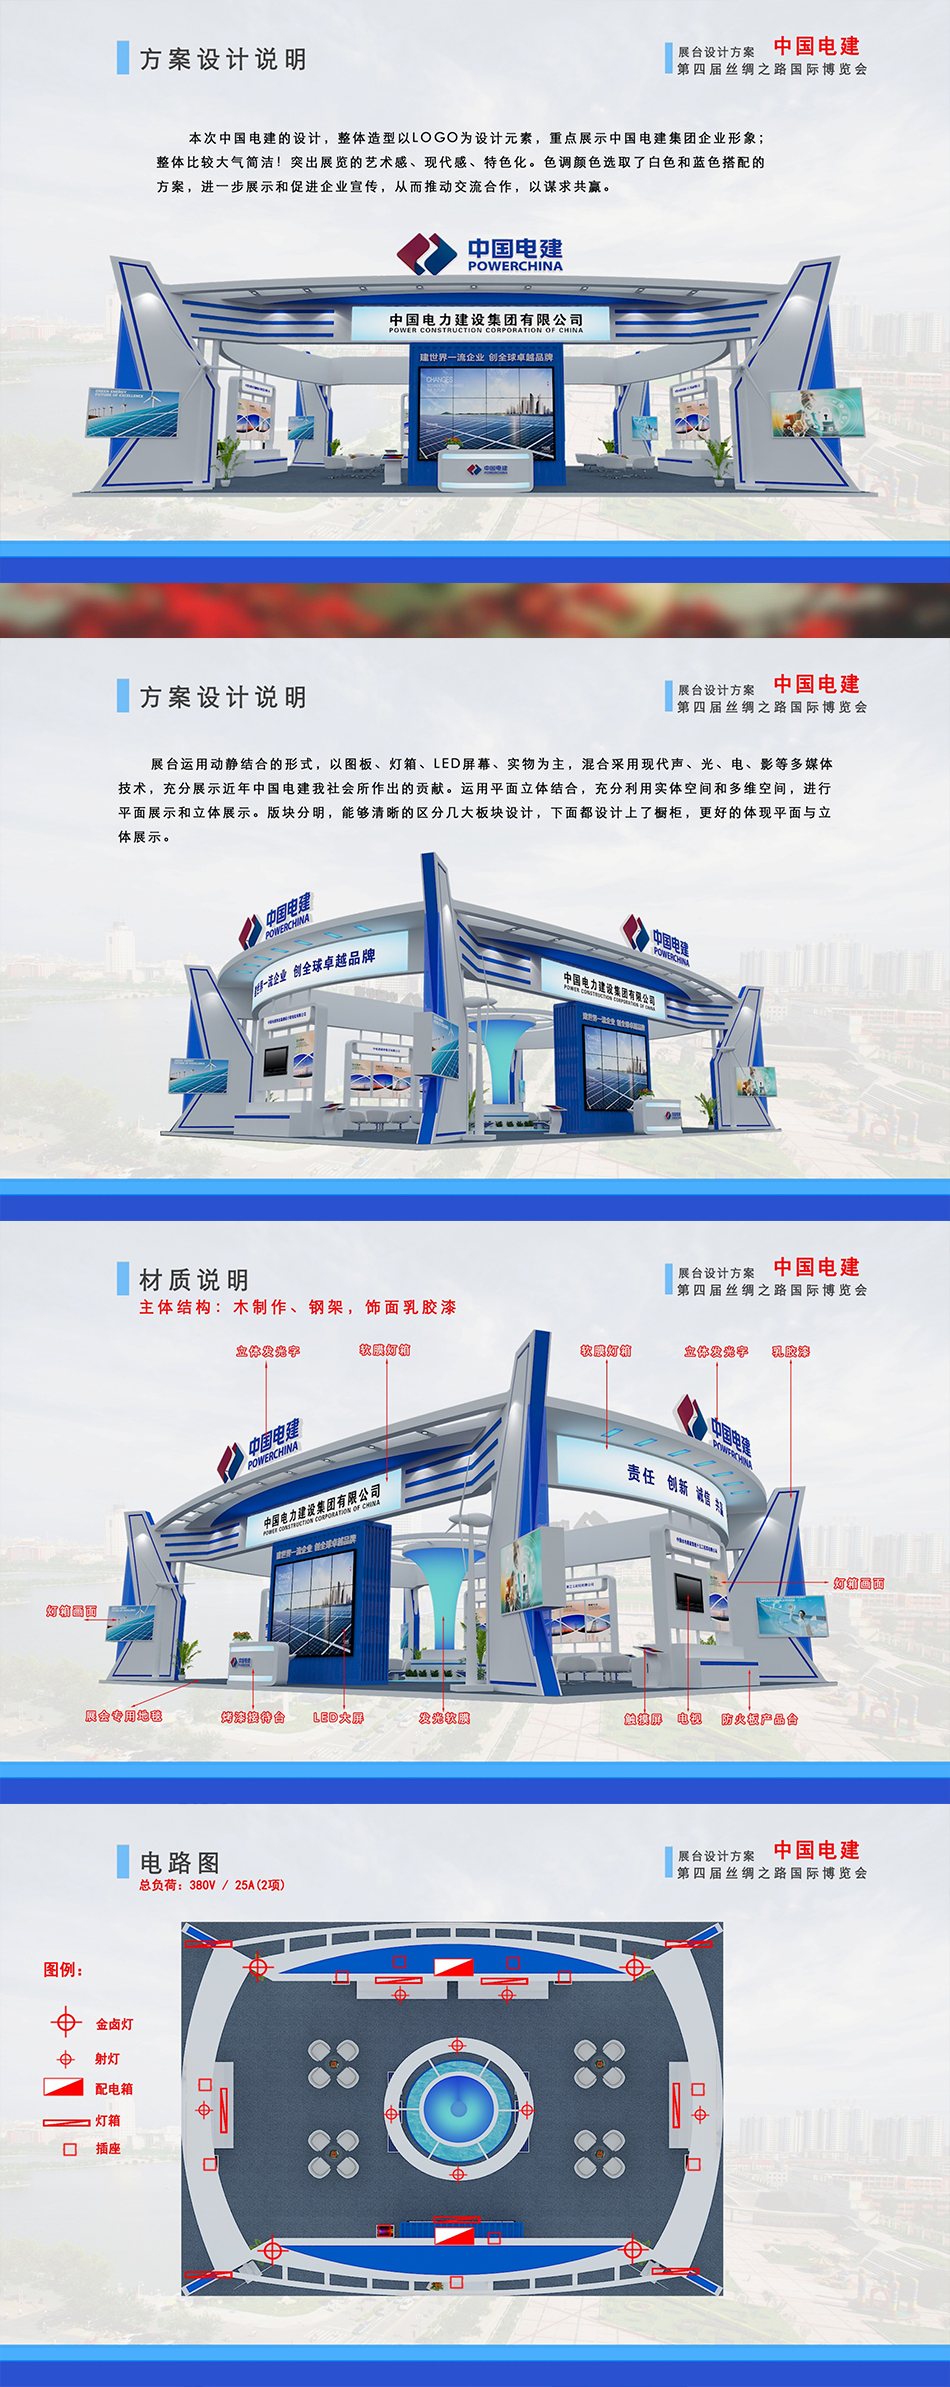 中国电建第四届丝绸之路国际博览会展台设计